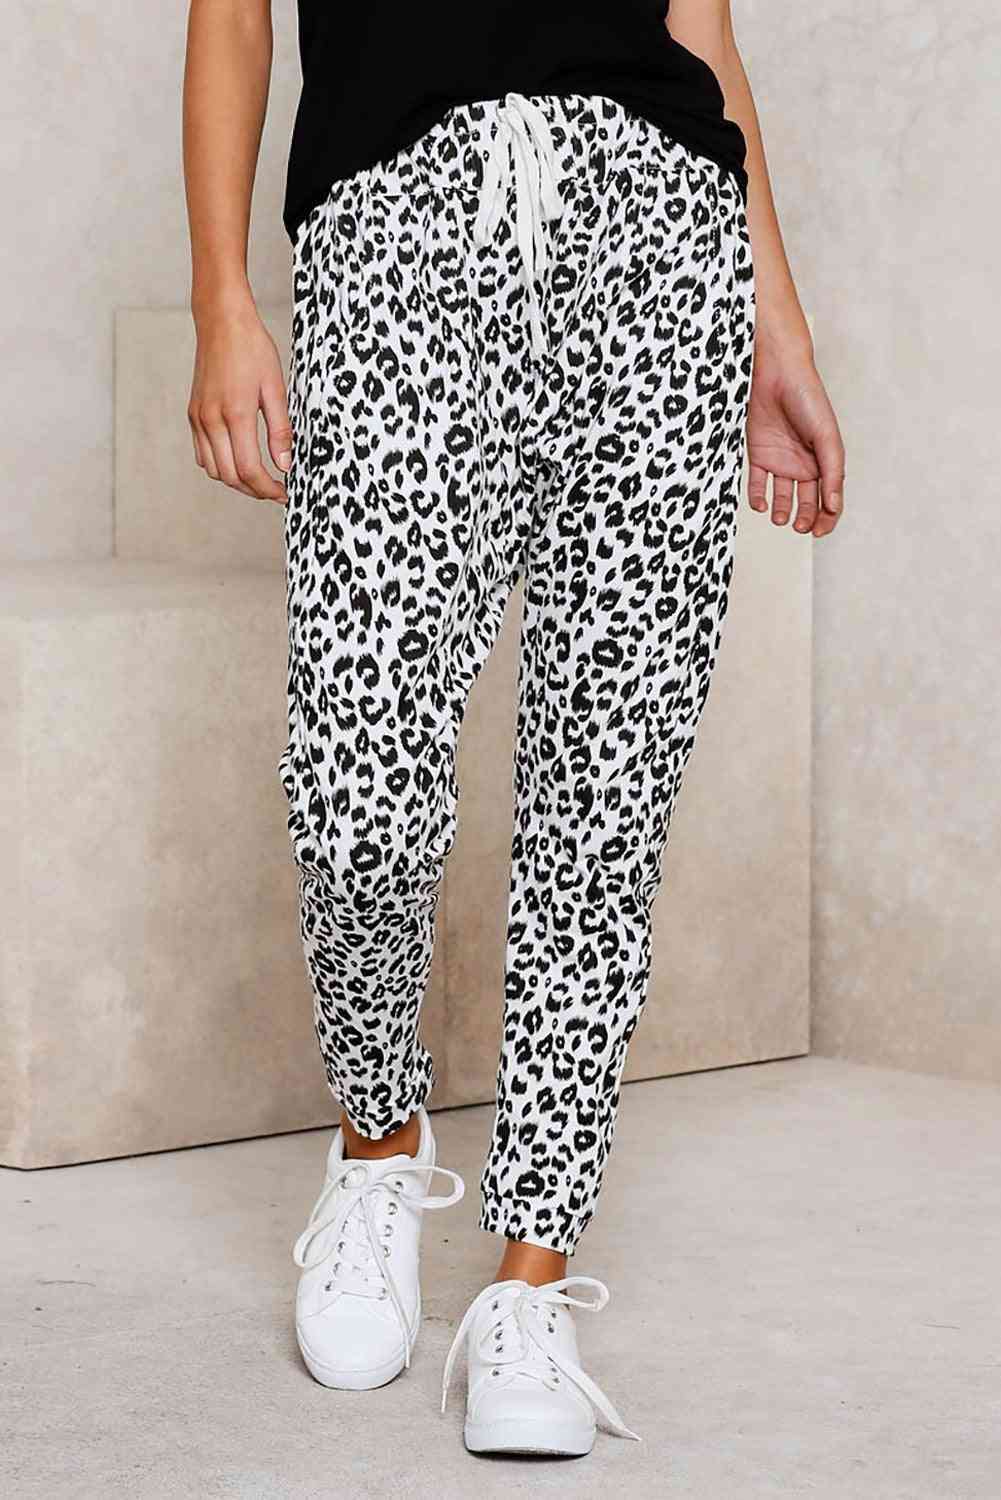 Pantalones casuales ajustados con estampado de leopardo blanco